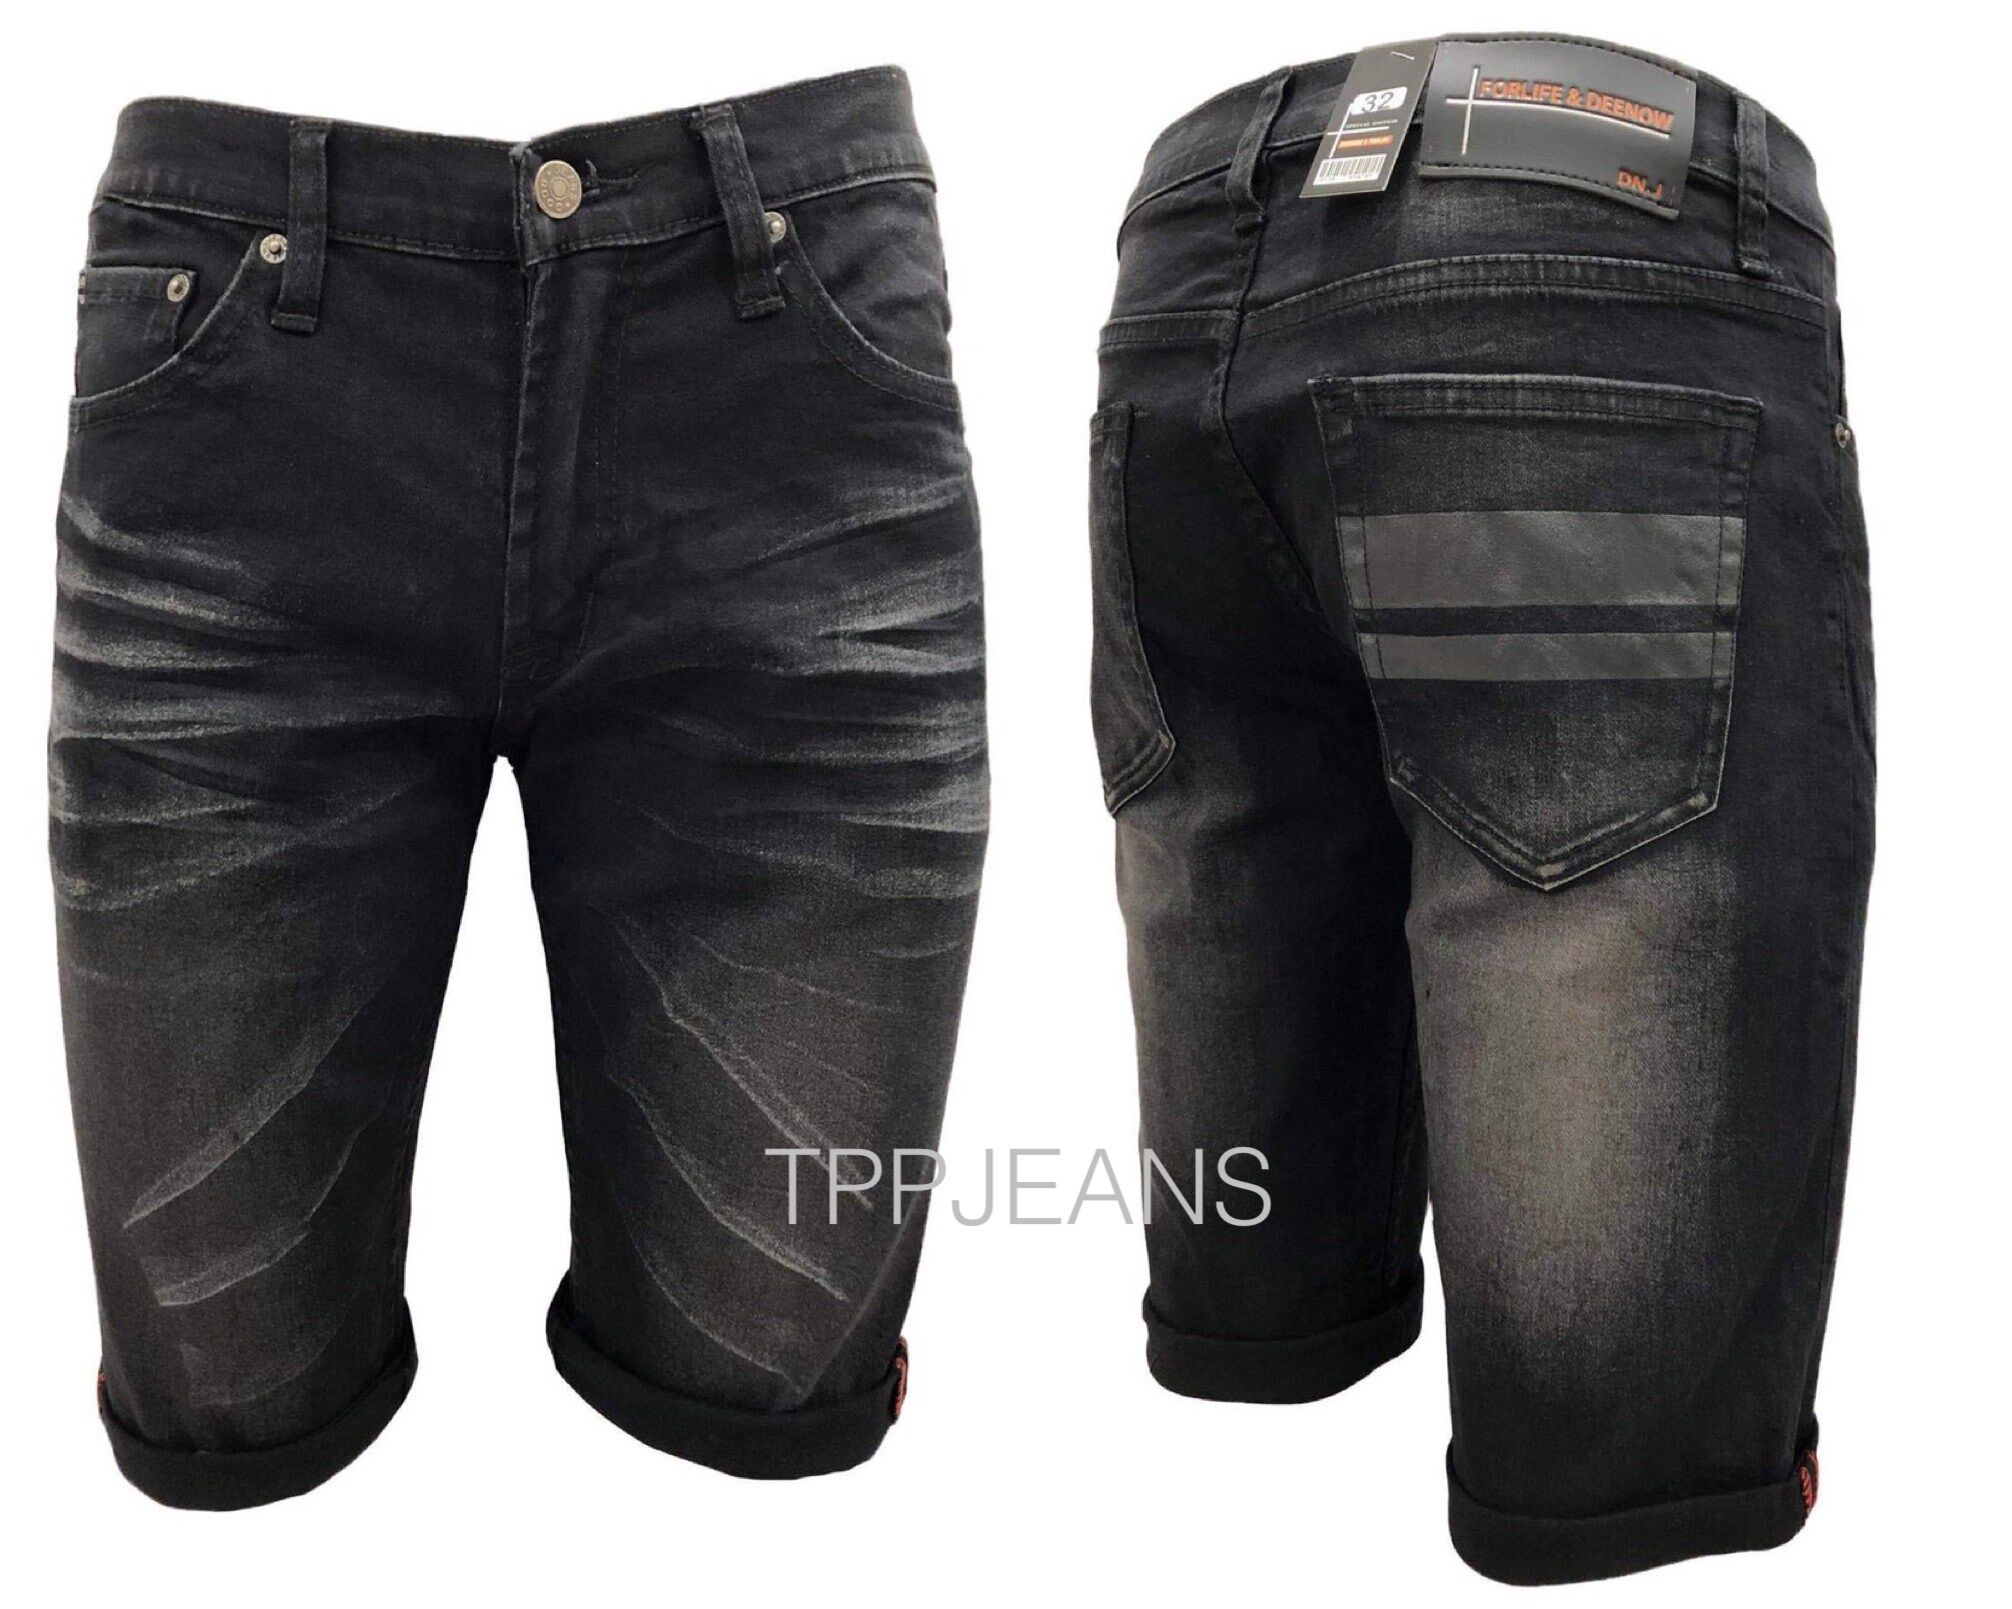 TPPJEANS DNM Men's Shorts กางเกงขาสั้นยีนส์ชายสกรีนดำ สีดำฟอก ผ้ายืด ทรงสวย สวมใส่สบาย Size 28-44 รับชำระปลายทาง